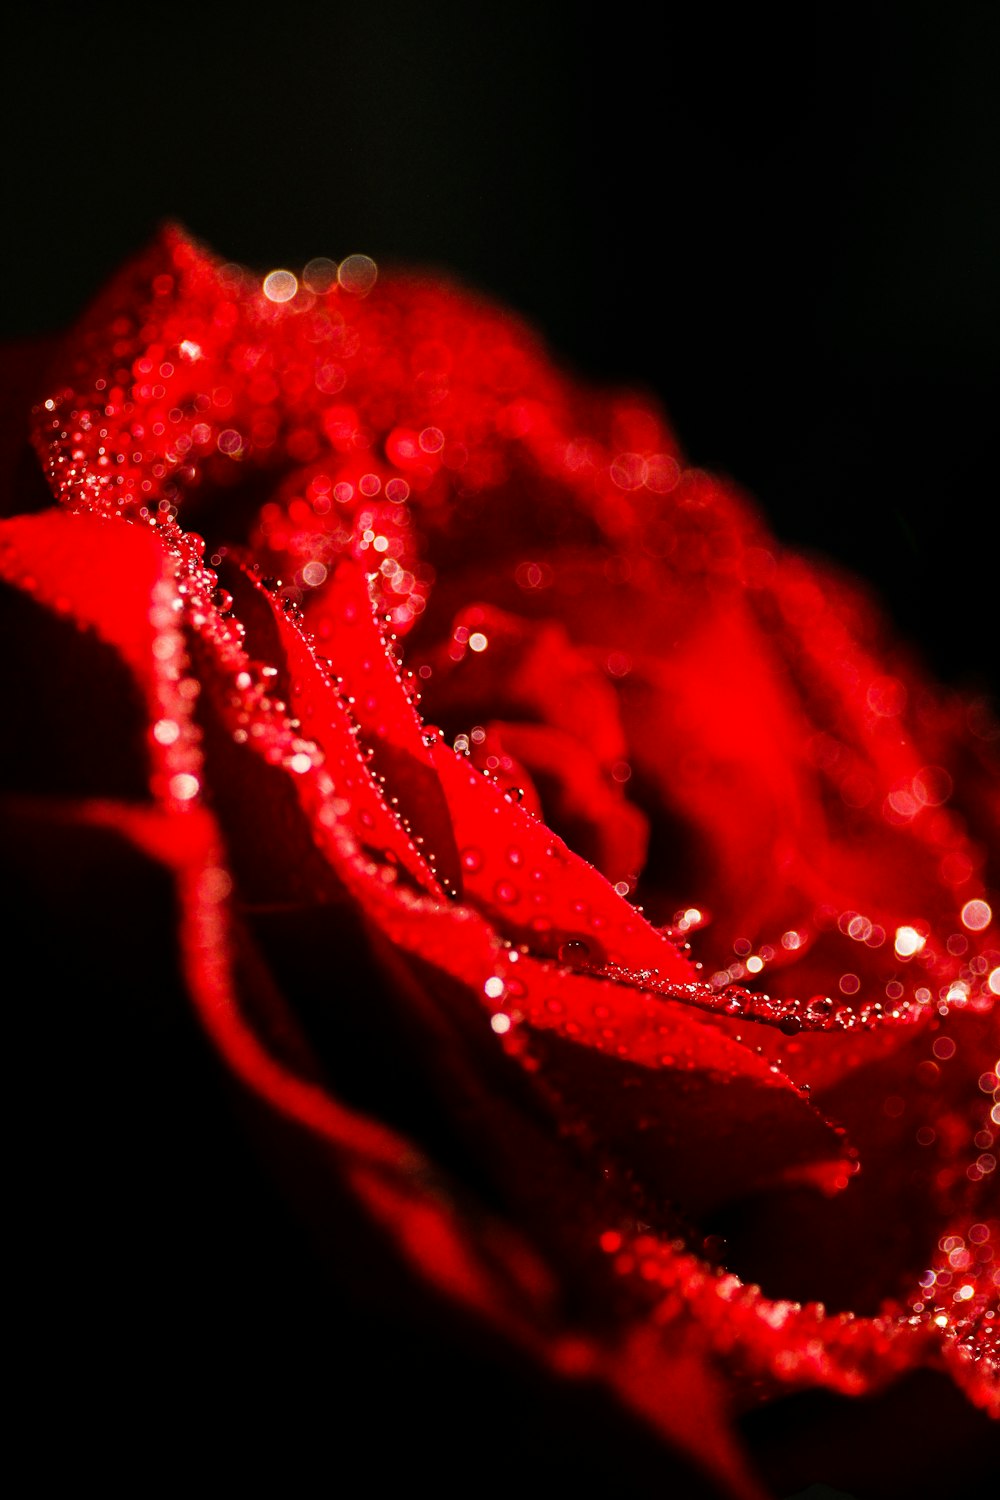 Hoa hồng đỏ là biểu tượng của tình yêu và sự ấm áp. Hãy để bức ảnh này đưa bạn đến với một thế giới ngập tràn sắc đỏ và khoái cảm.